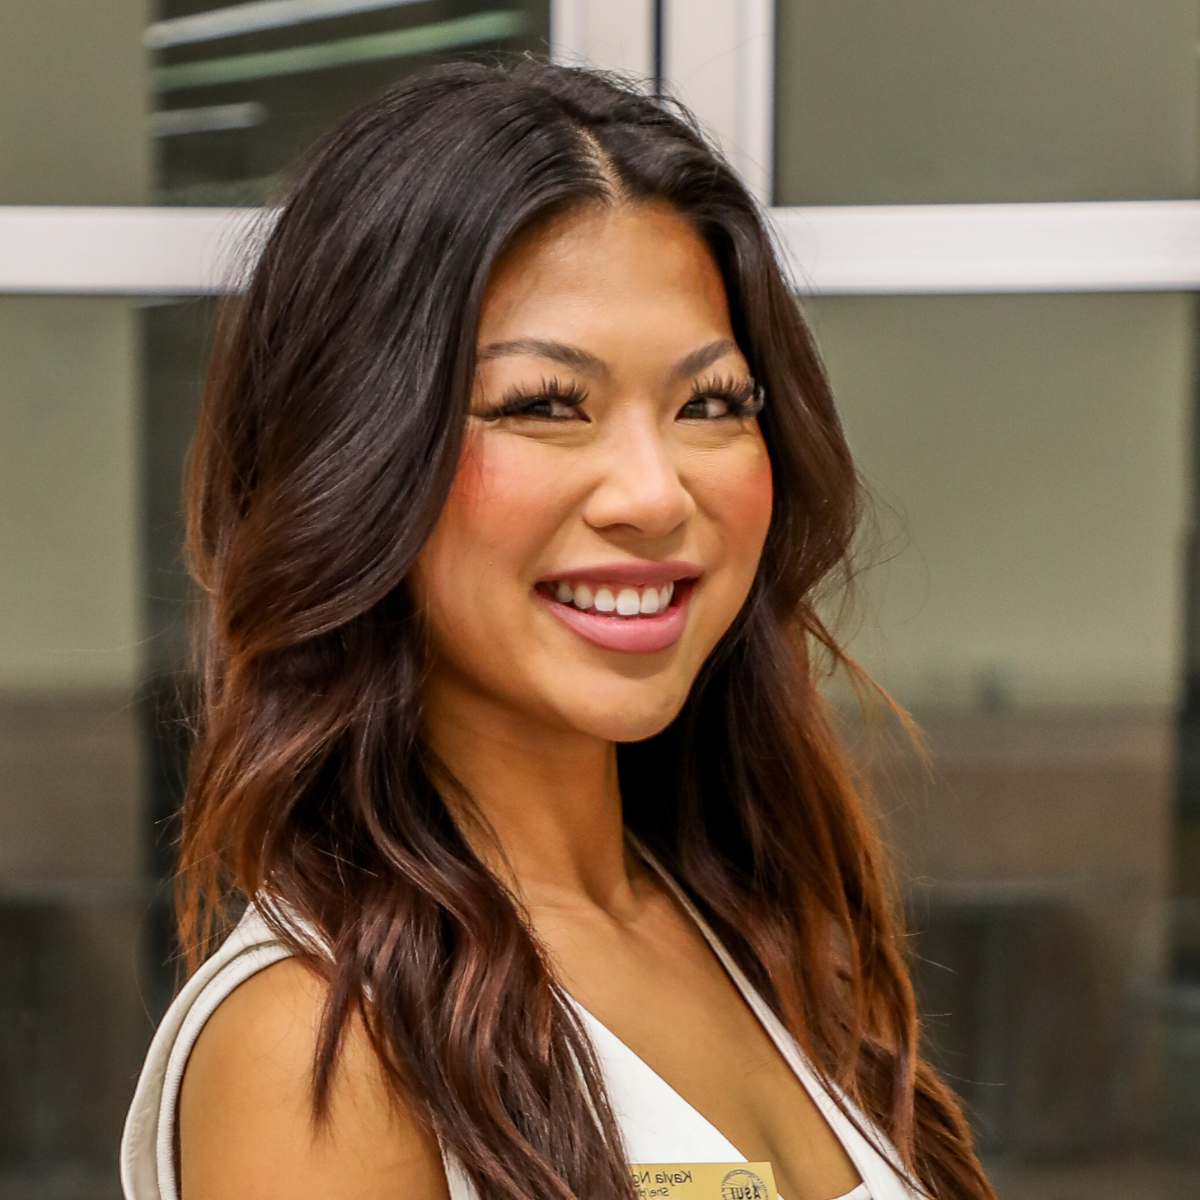 Kayla Nguyen